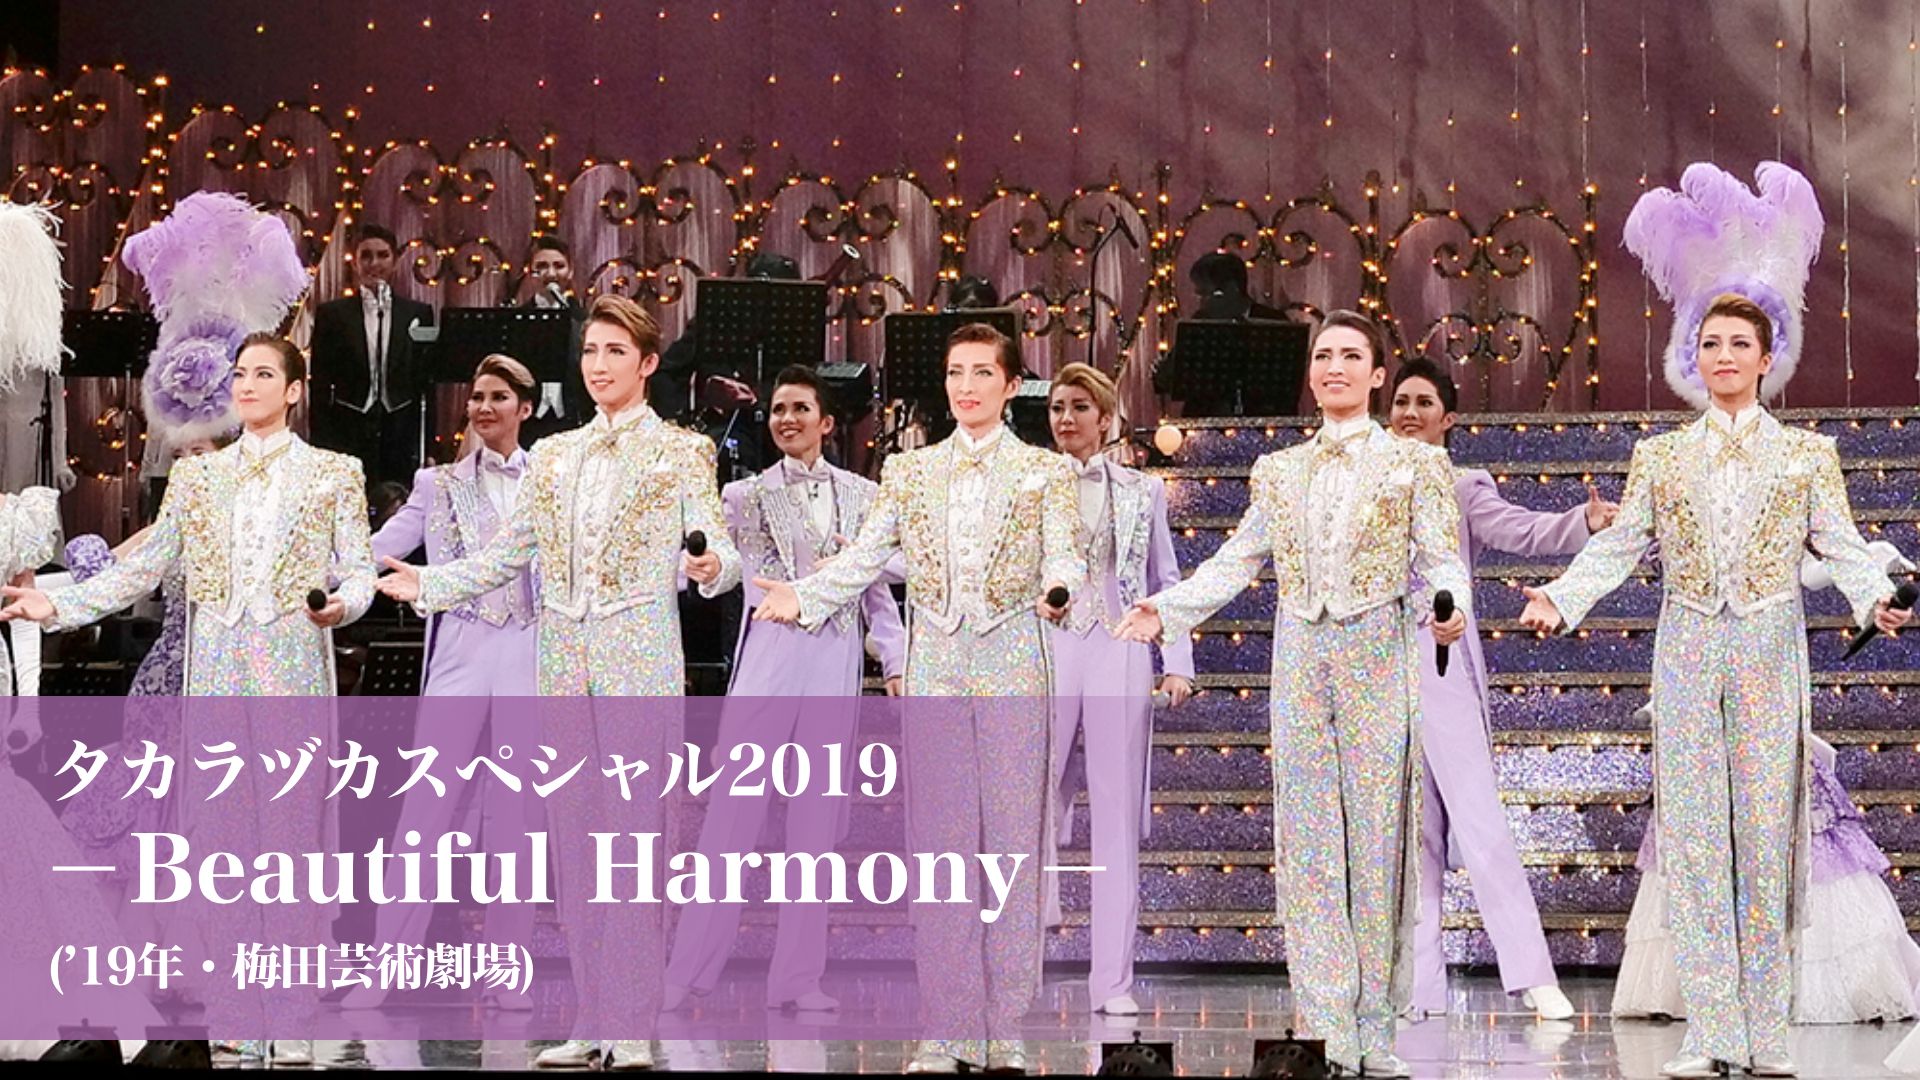 タカラヅカスペシャル2019-Beautiful Harmony-('19年・梅田芸術劇場)